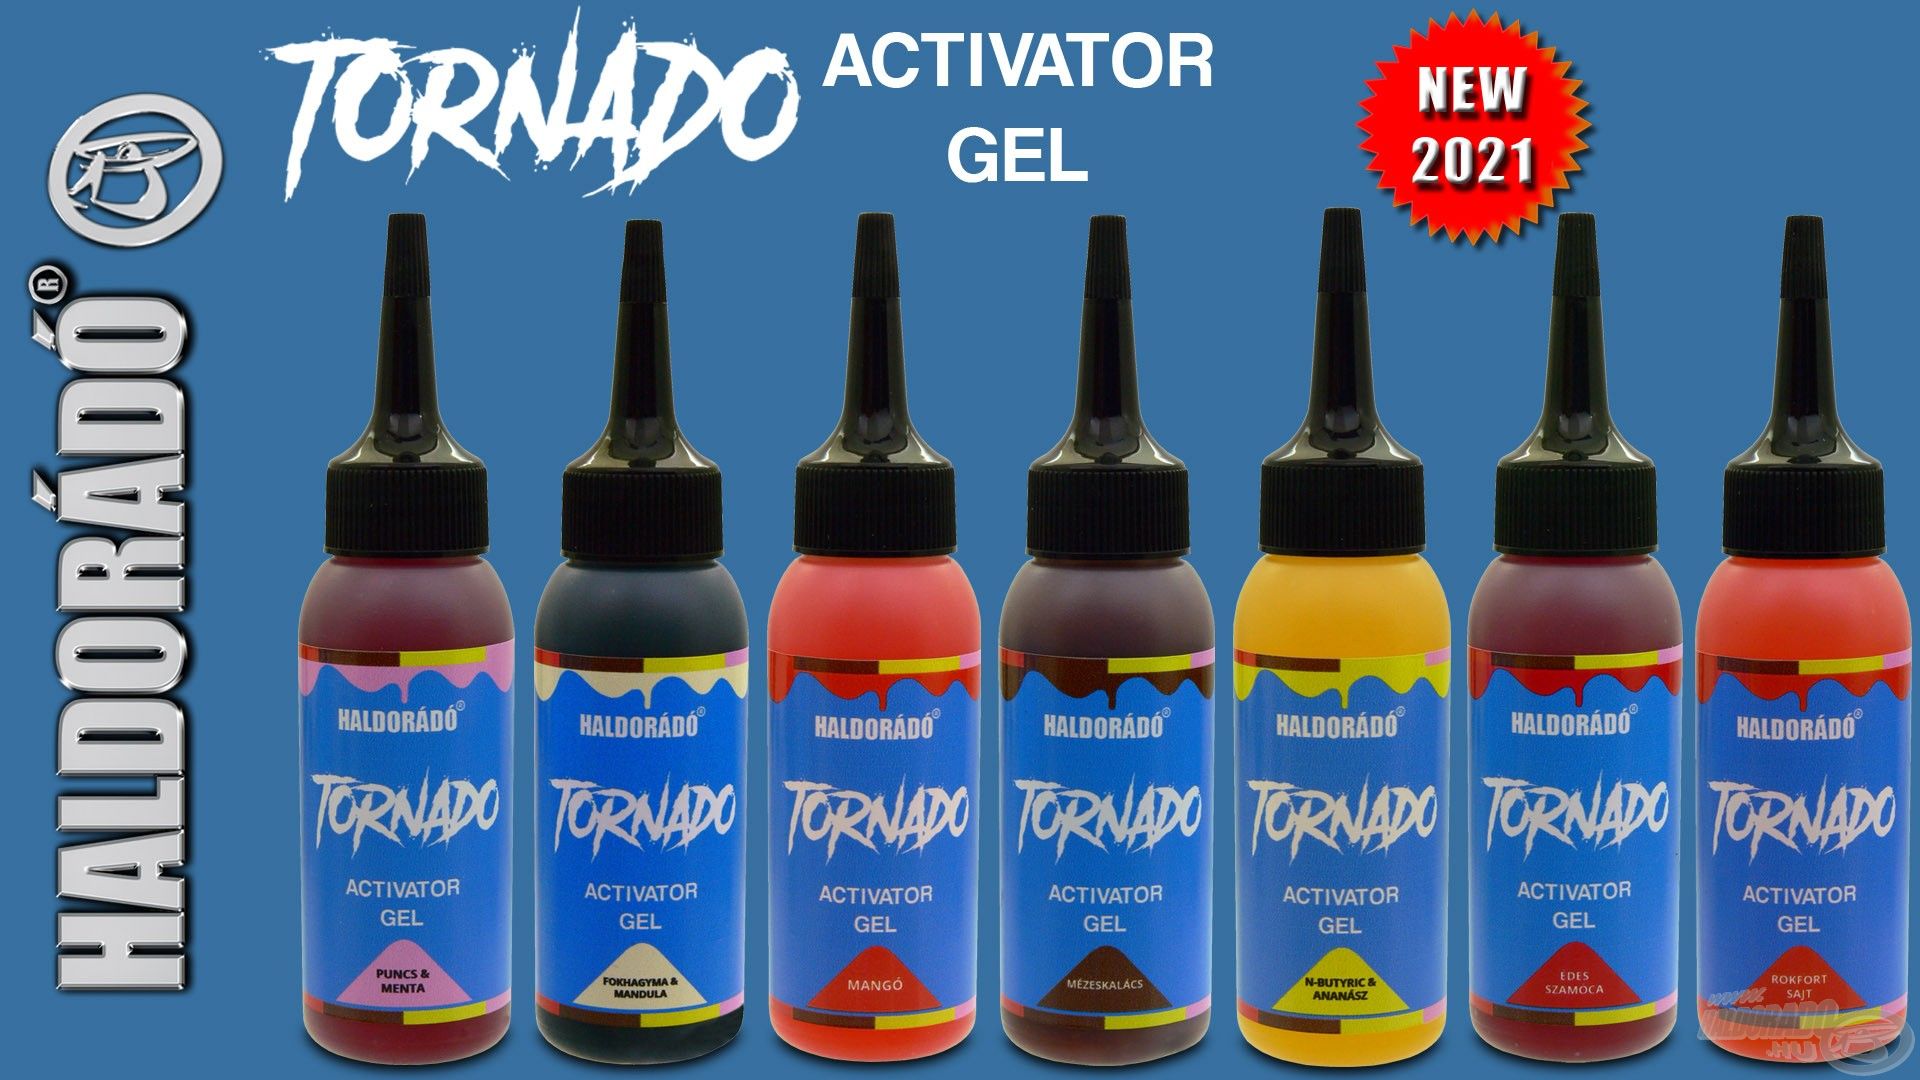 A Tornado csalikkal megegyező ízekben és színekben elérhető a Tornado Activator Gel, amely nagy sűrűségű, jól tapadó, kapásfokozó adalékanyag